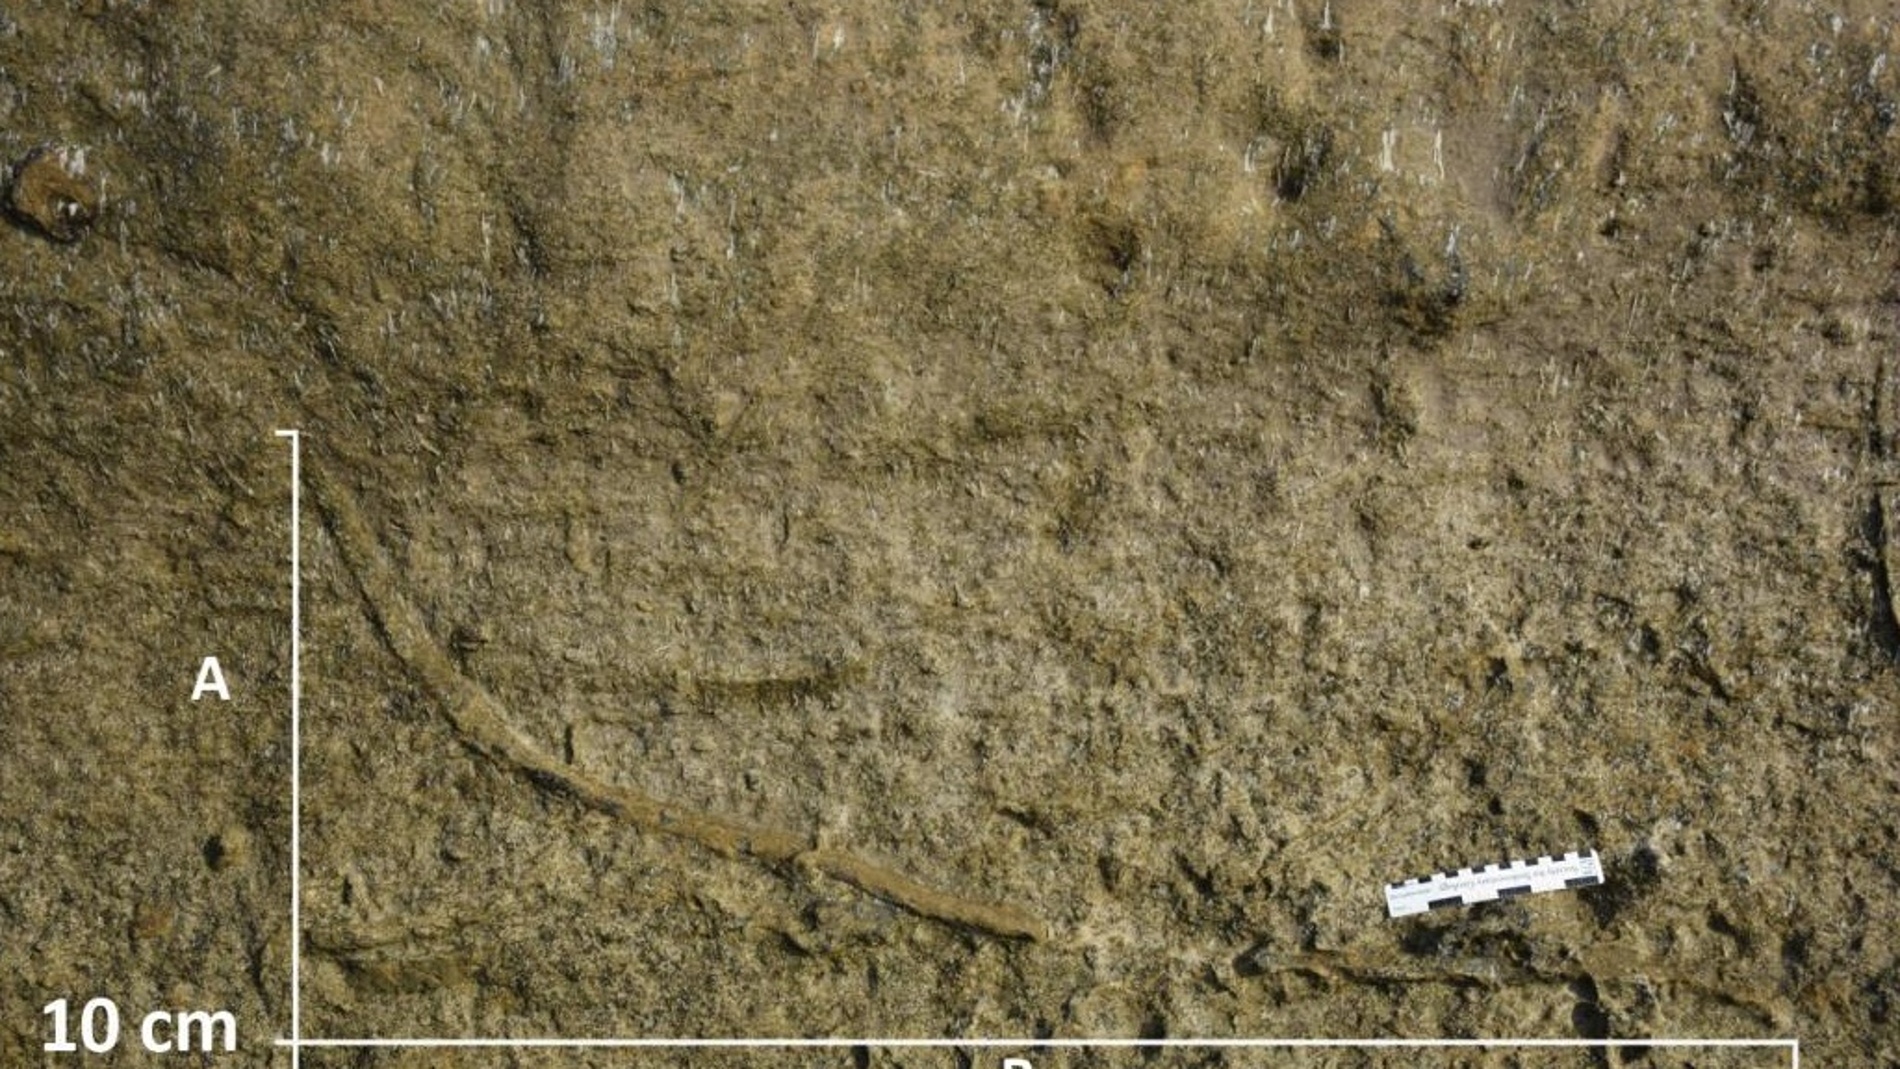 El fondo marino estuvo habitado por gusanos depredadores hasta hace 5 3 millones de anos